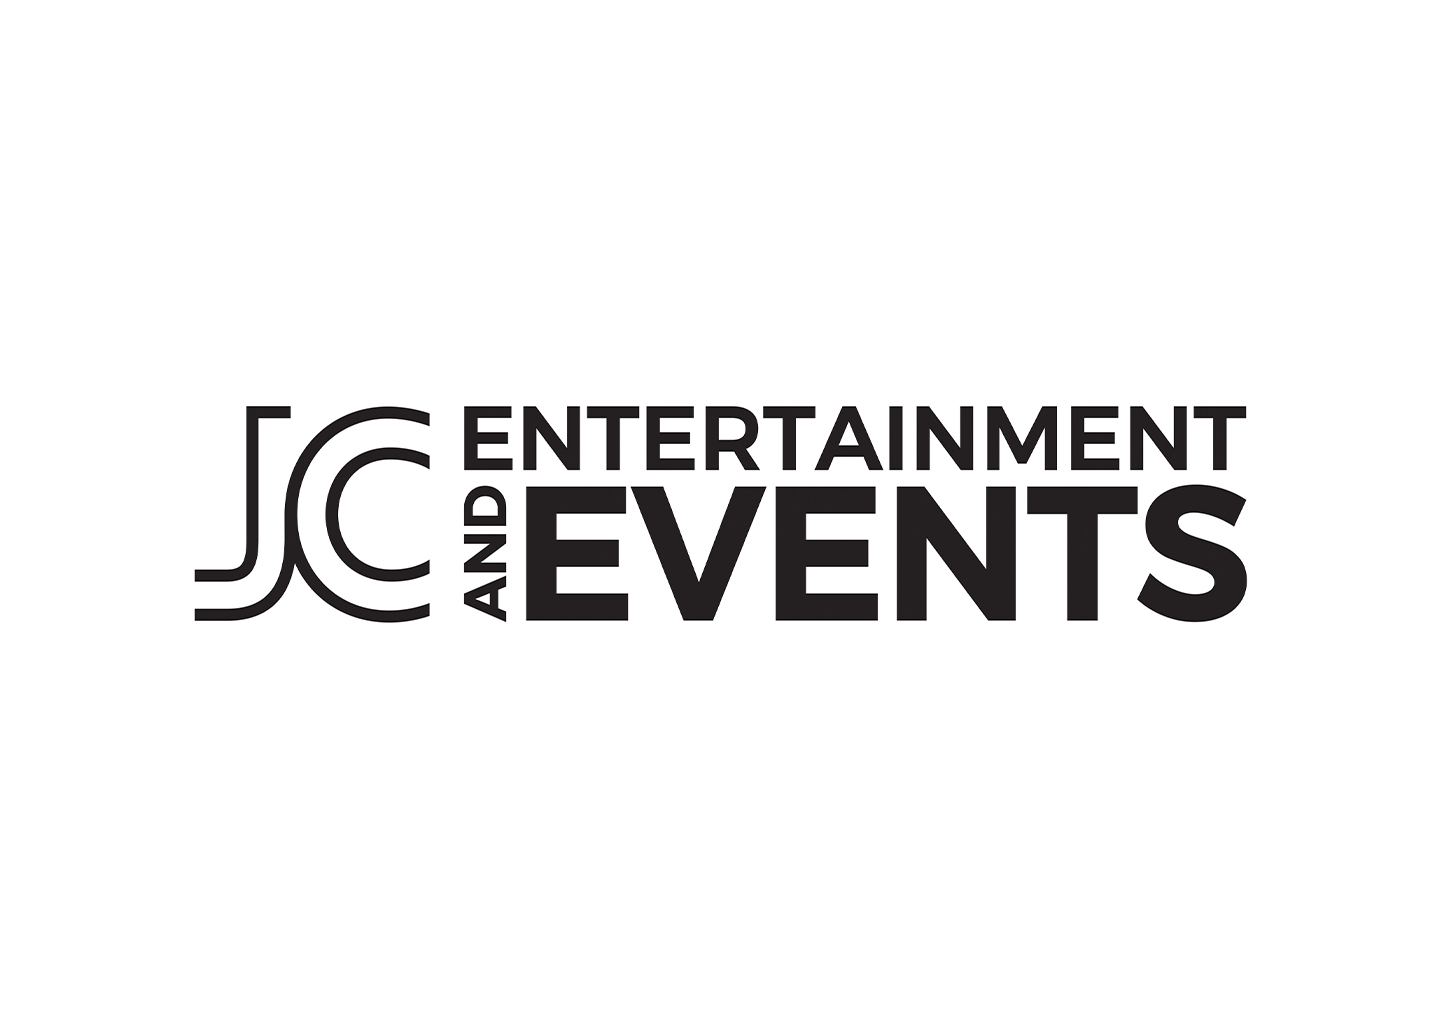 JC & Entertainment Events